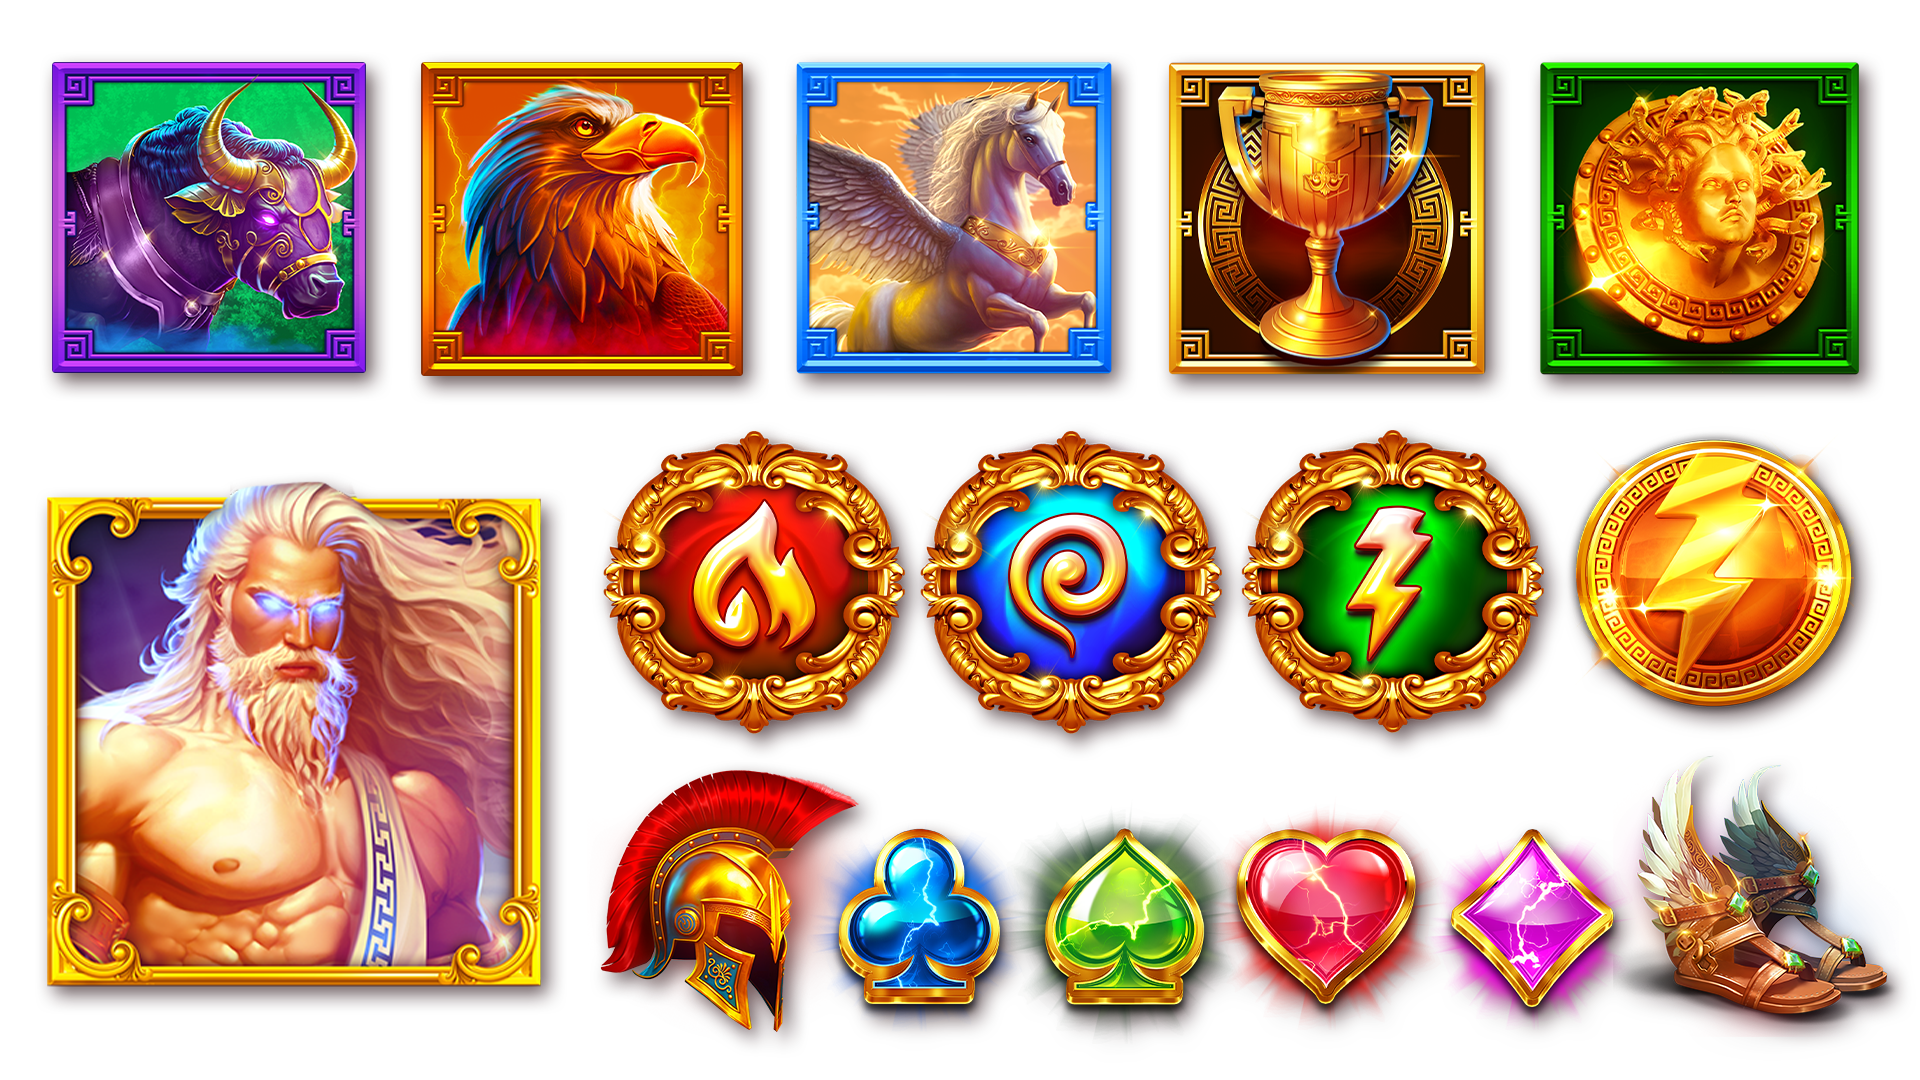 3 powers of zeus slot bonus symbols